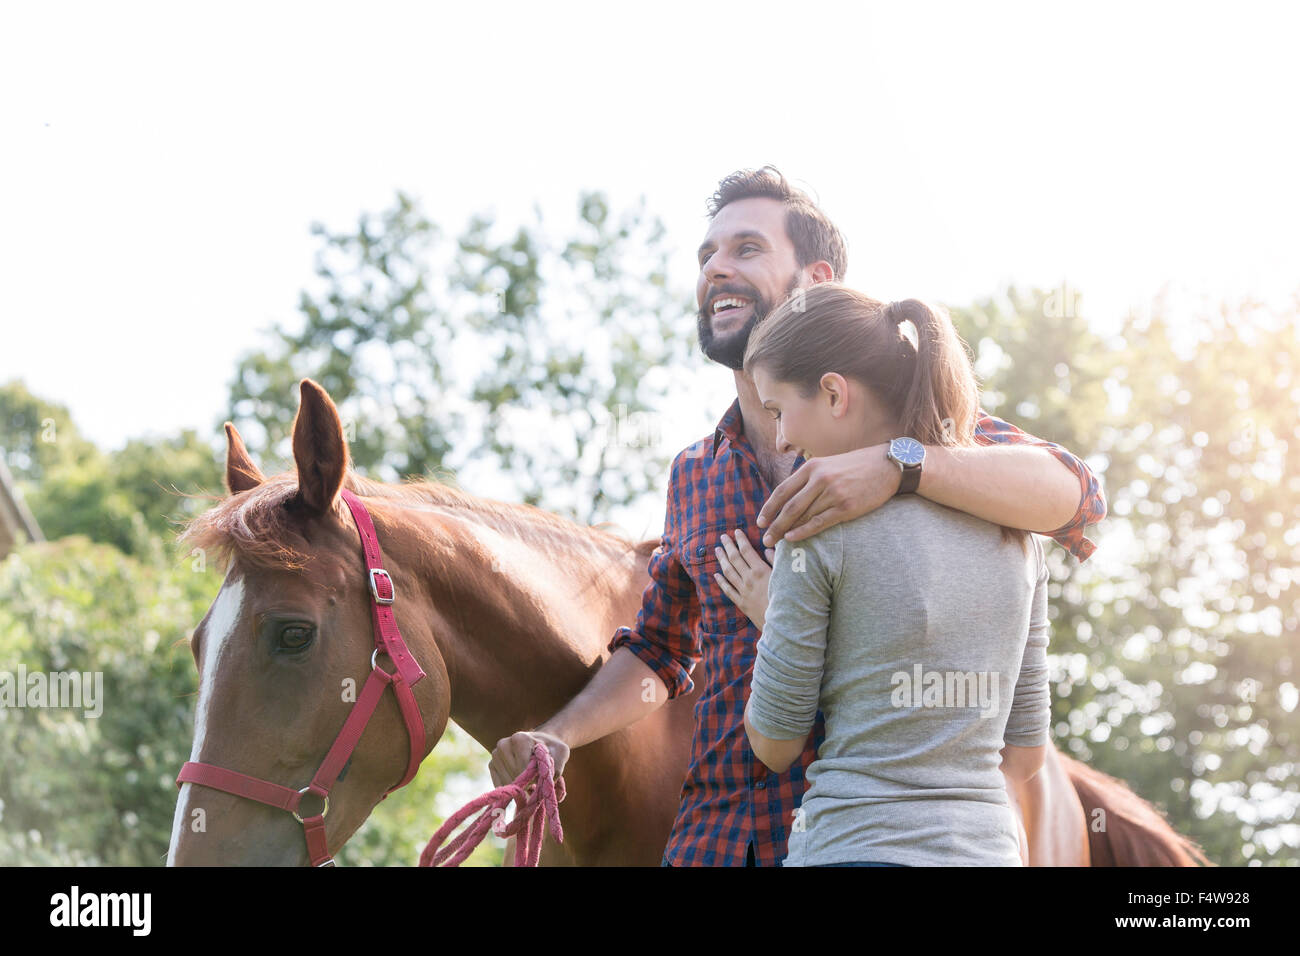 Smiling couple hugging près de horse Banque D'Images